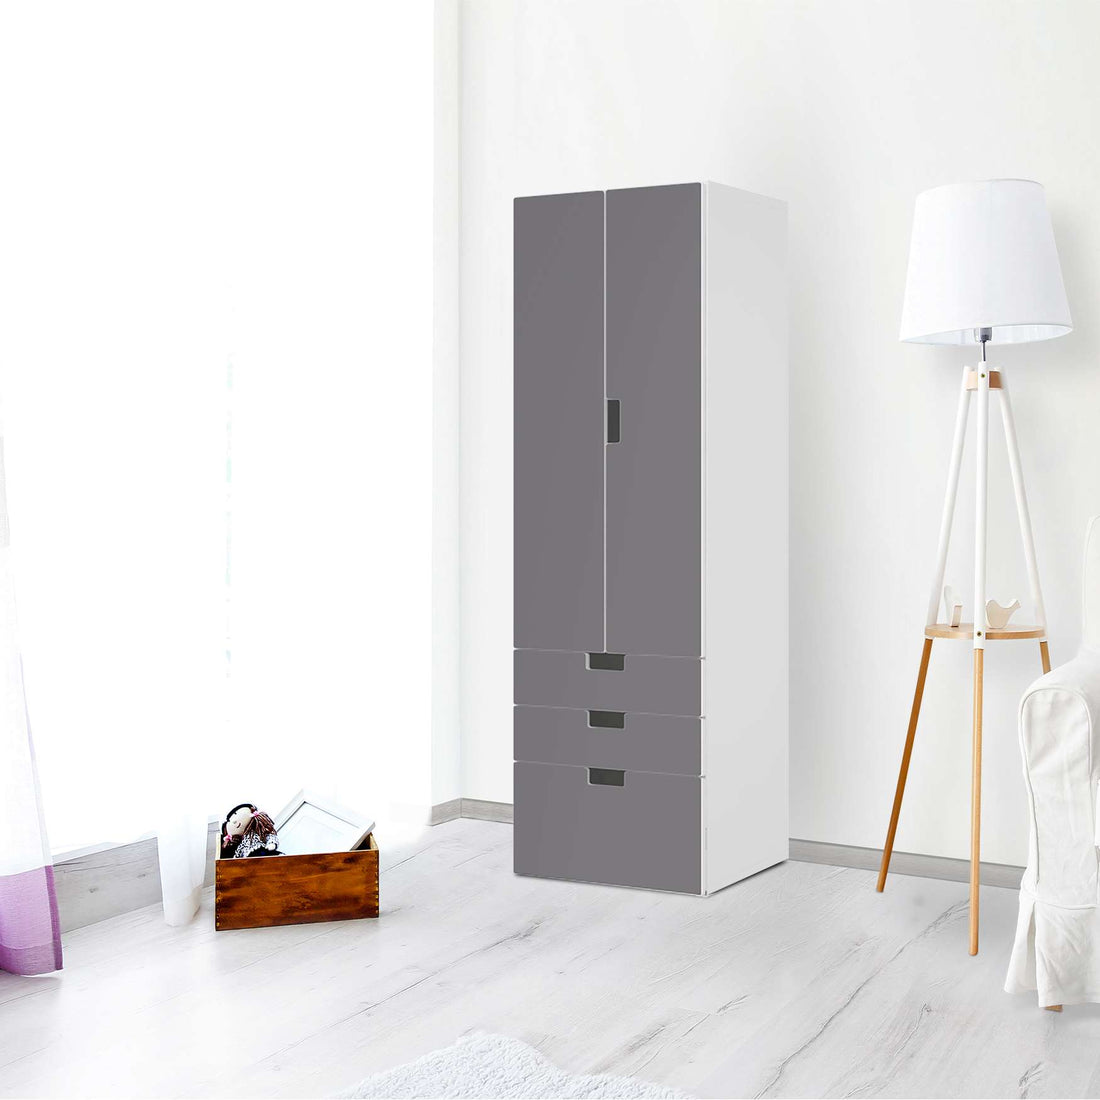 Klebefolie Grau Light - IKEA Stuva kombiniert - 3 Schubladen und 2 große Türen (Kombination 1) - Wohnzimmer